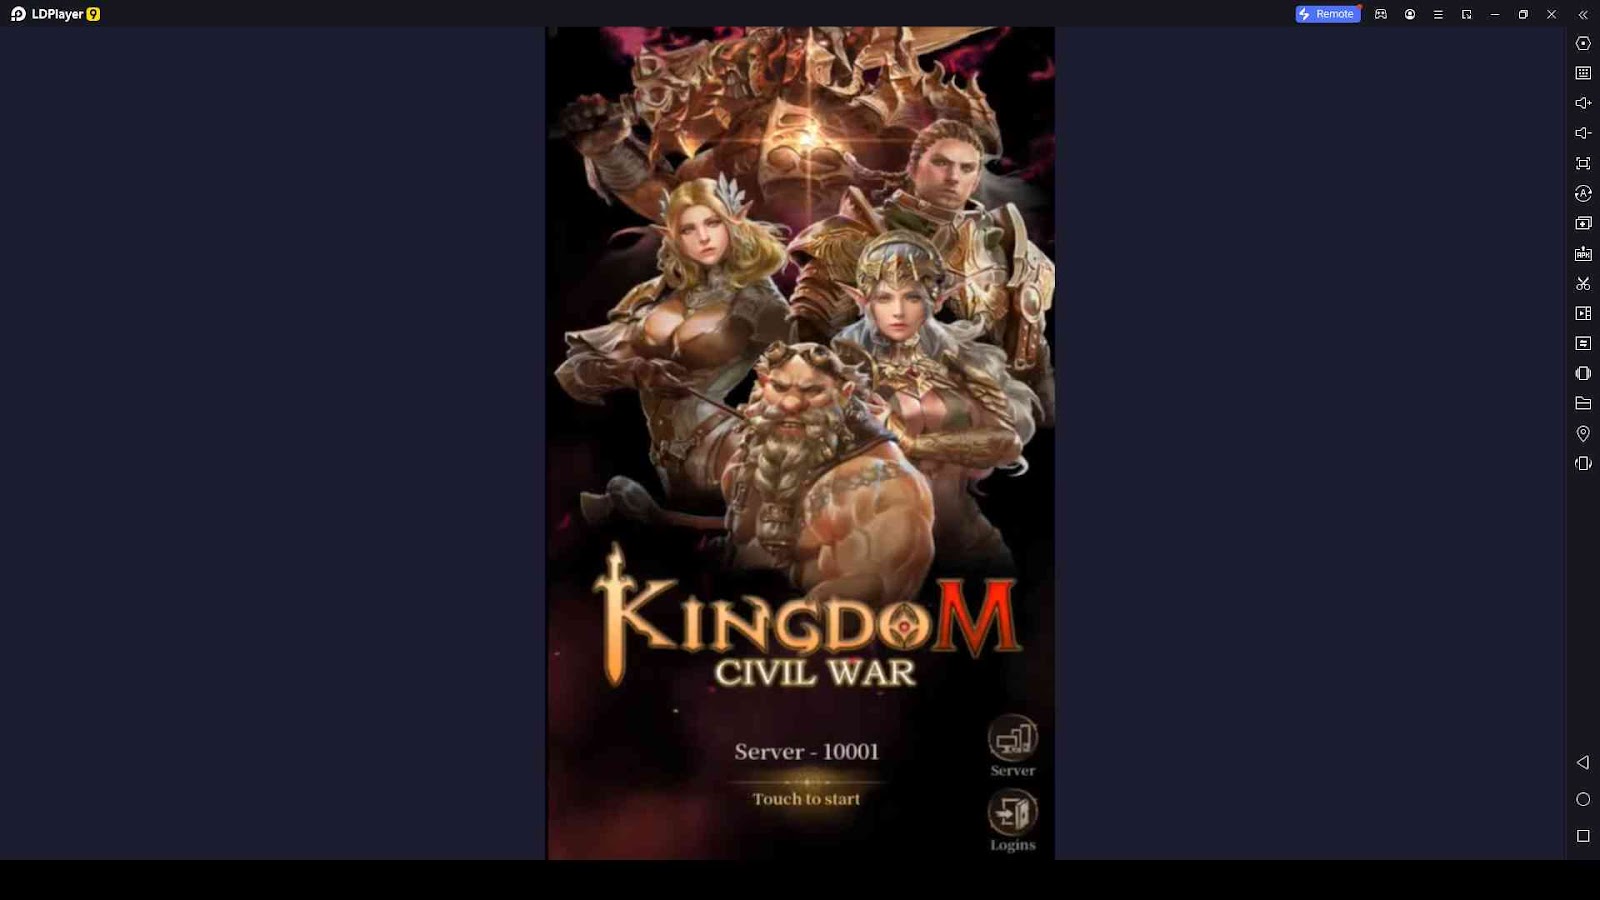 Kingdom Civil War Codes